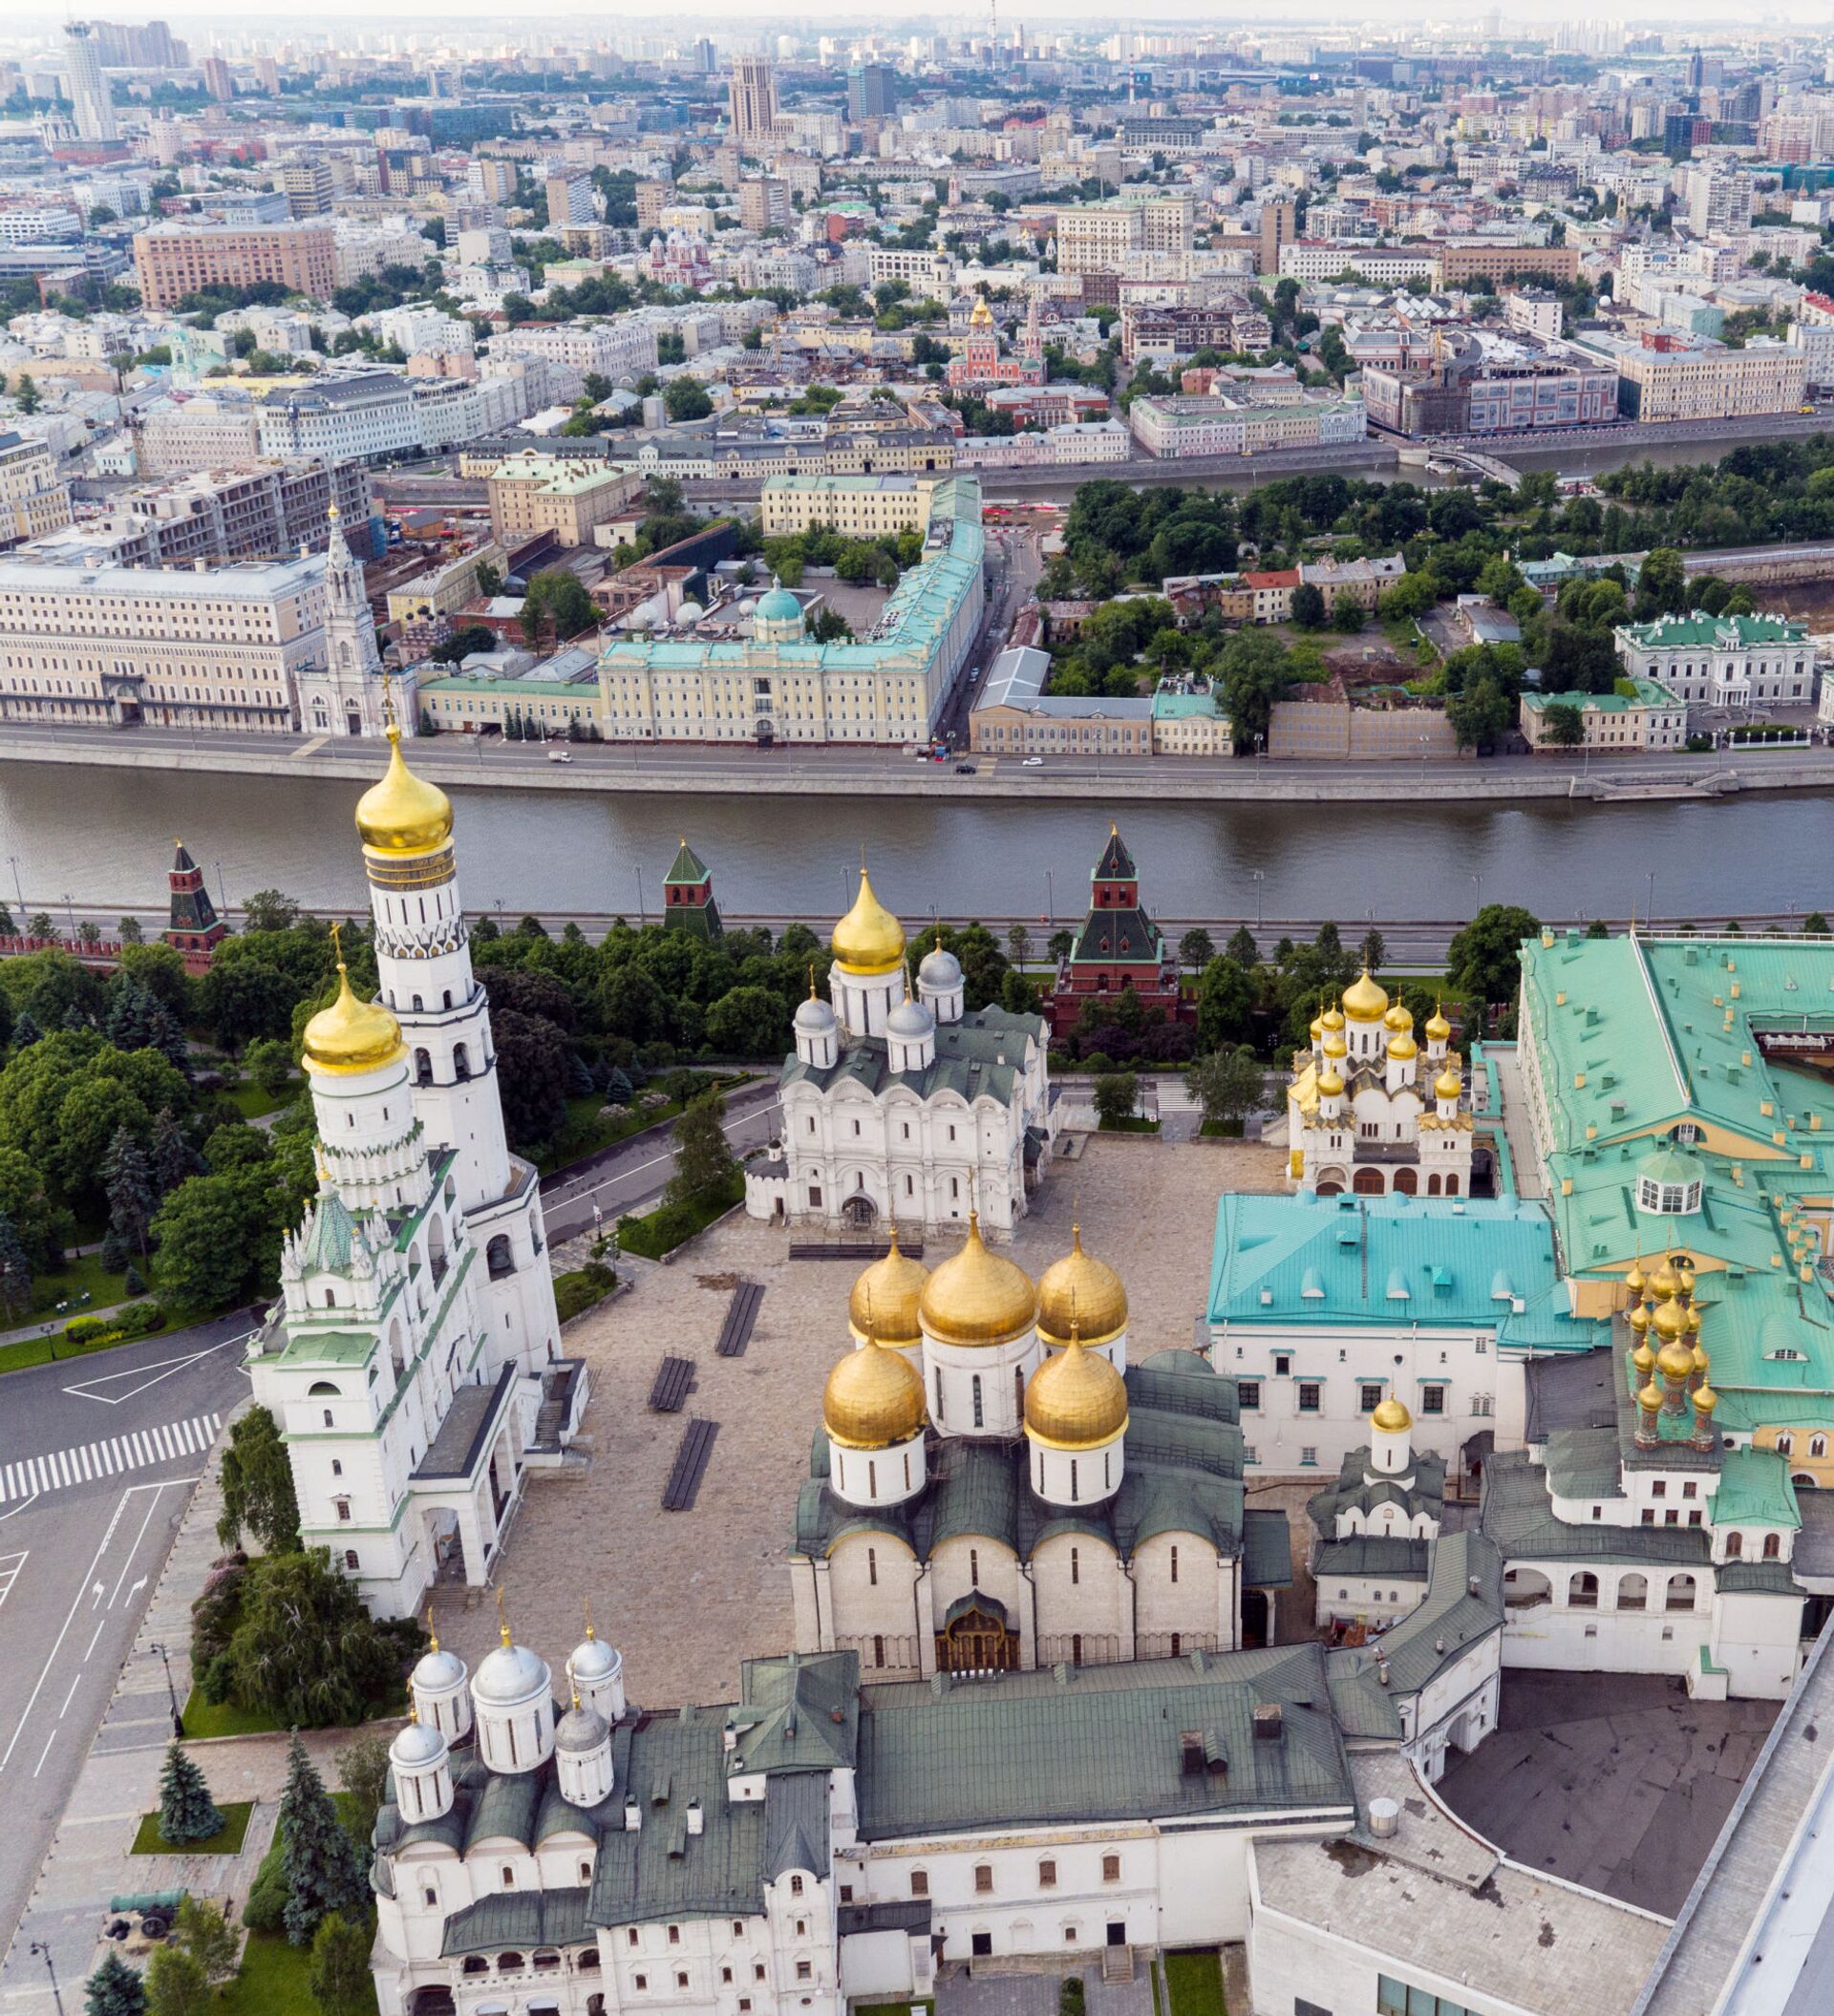 здания на территории кремля в москве названия